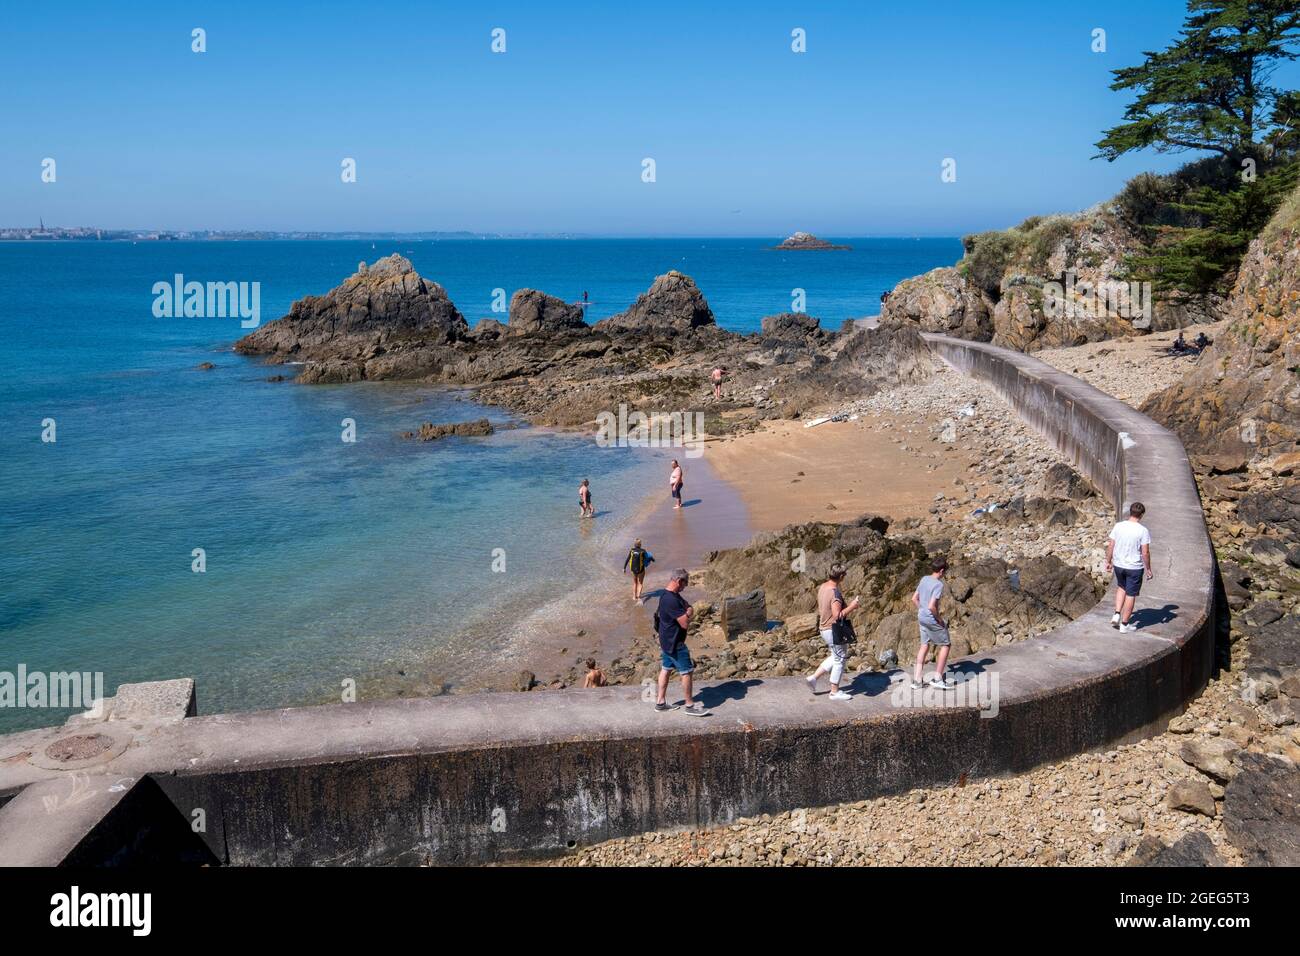 Saint Malo (Bretagna, Francia nord-occidentale): Turisti sul sentiero costiero che conduce al promontorio "pointe de la Varde" dalla spiaggia "plage du Pont" Foto Stock